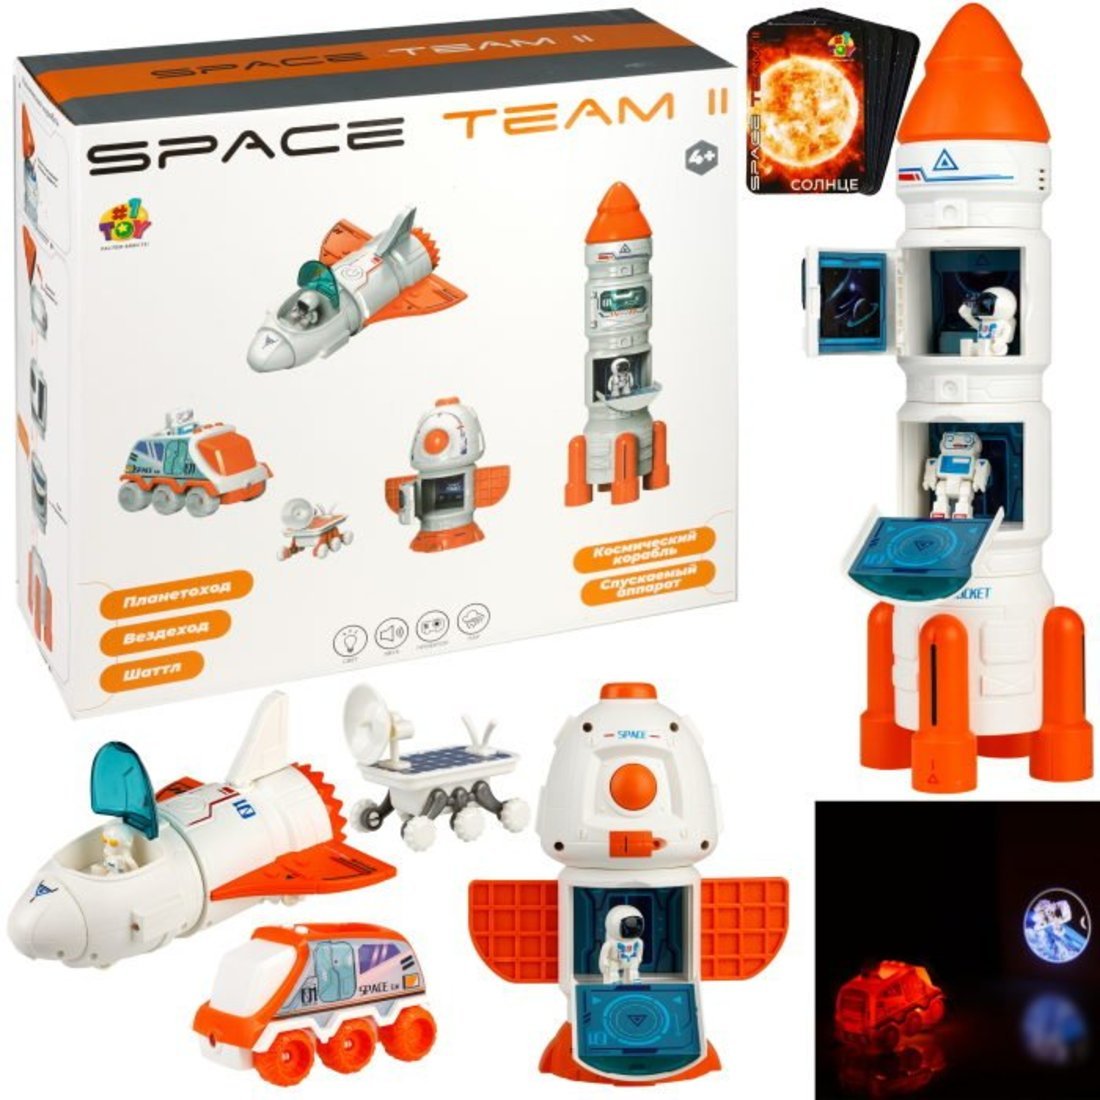 Игровой набор SPACE TEAM II Космический 4в1, свет и звук 1Toy Т24298